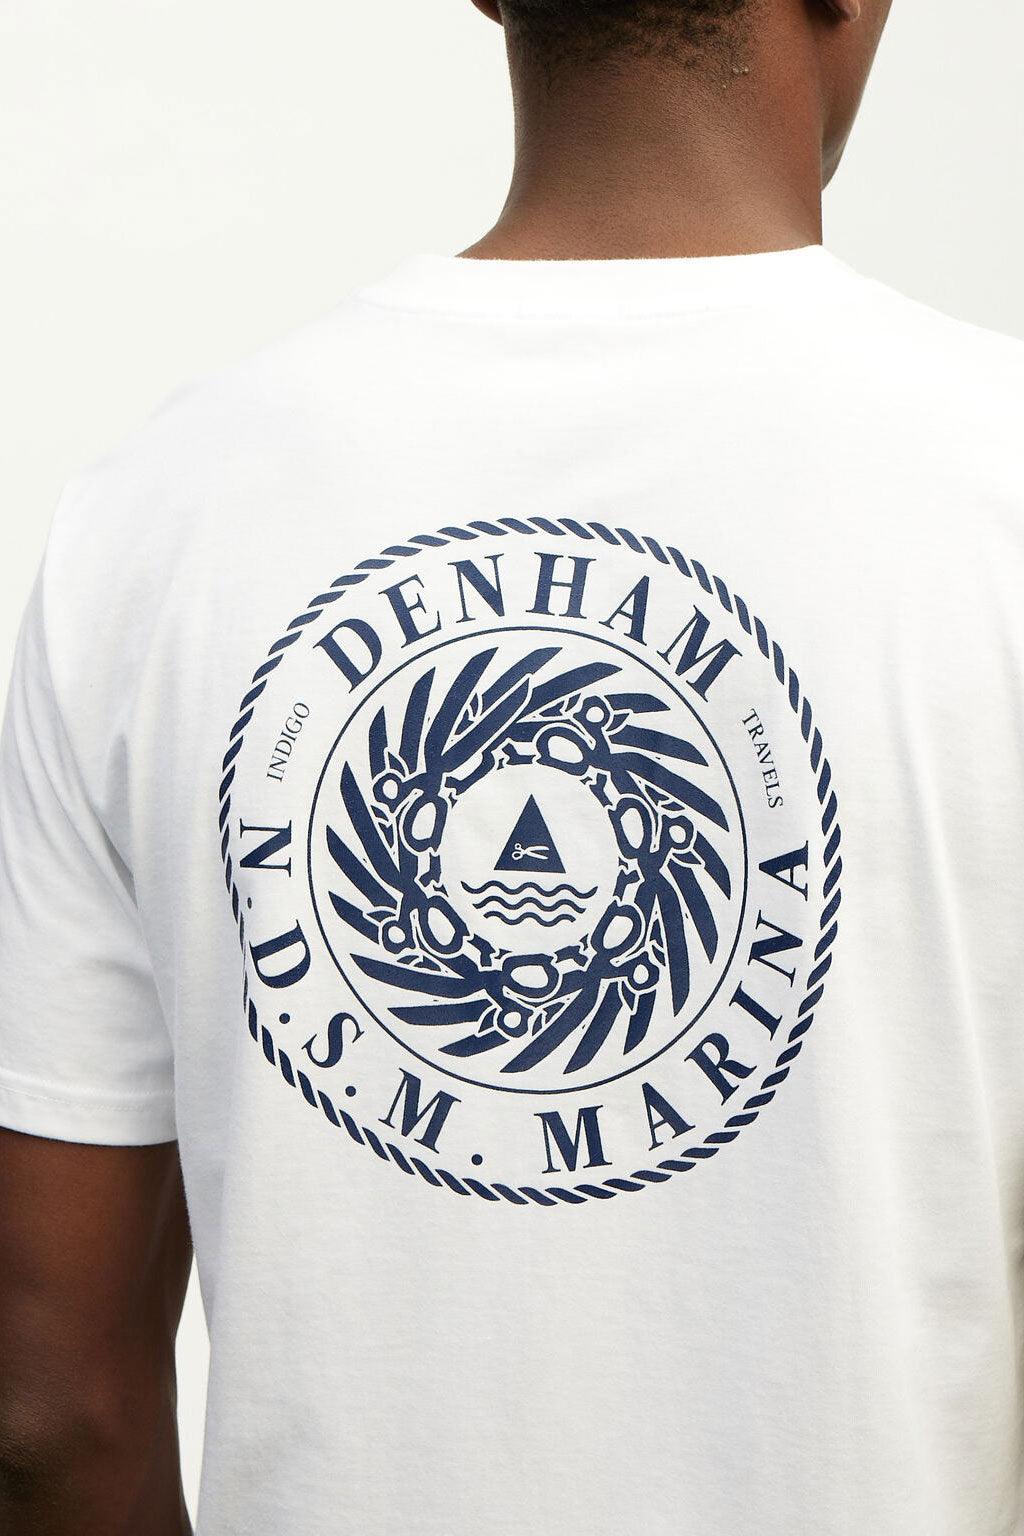 Denham t-shirt